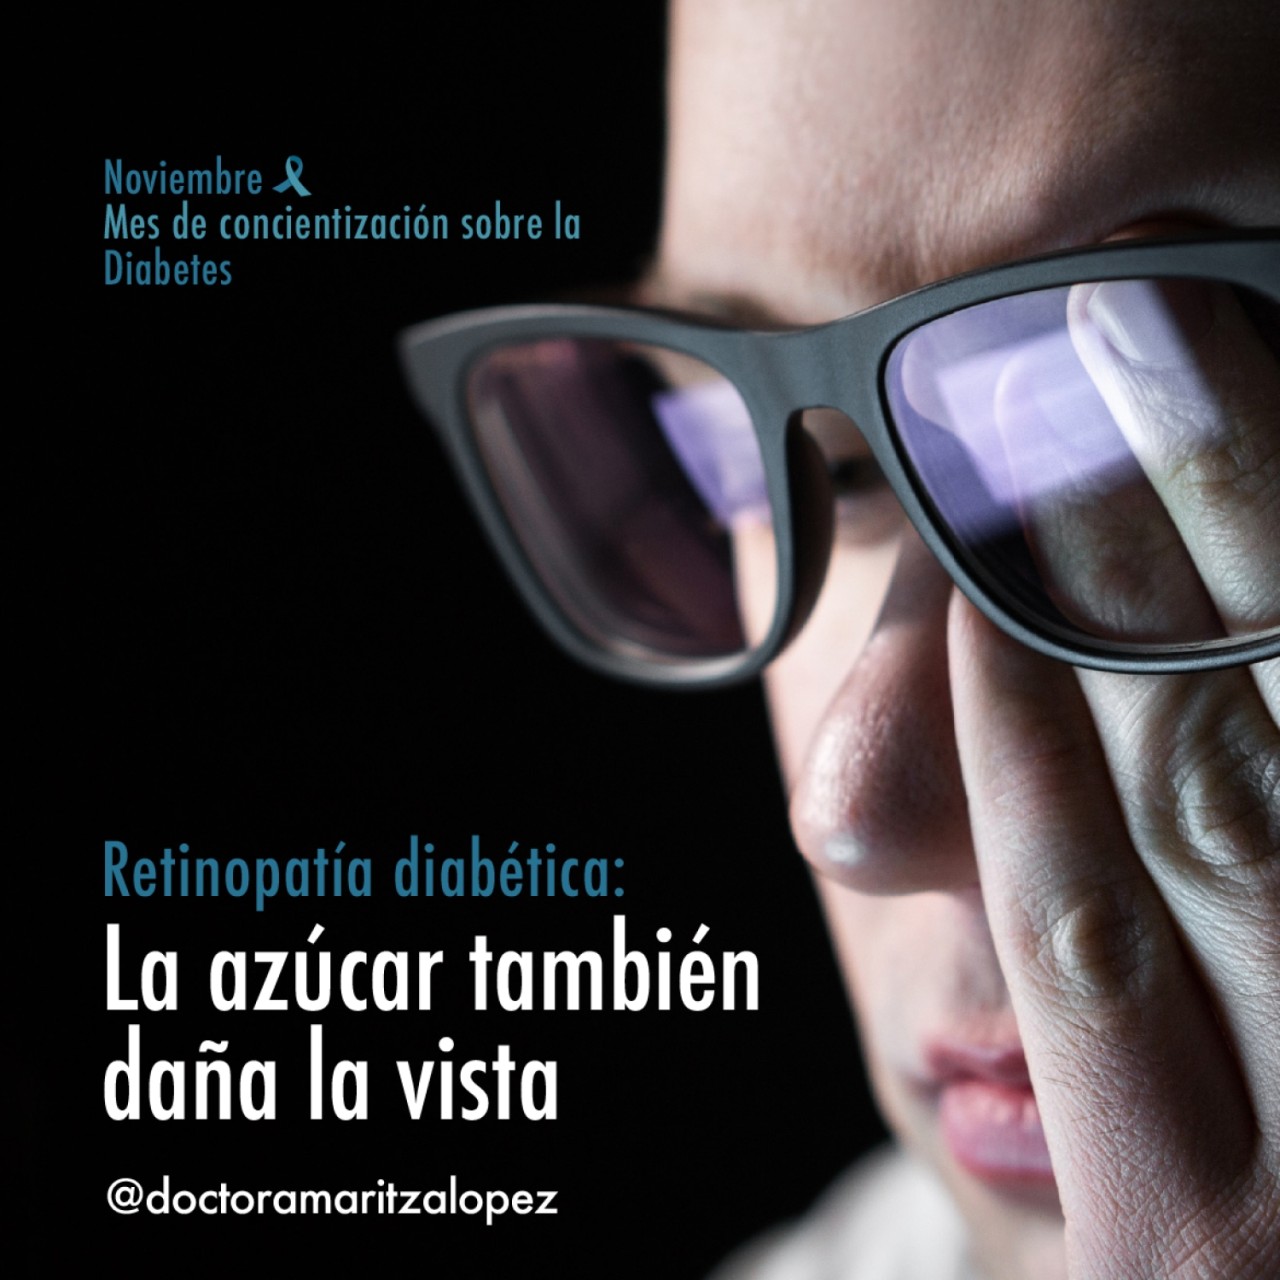 Retinopatía diabética: El azúcar también daña la vista